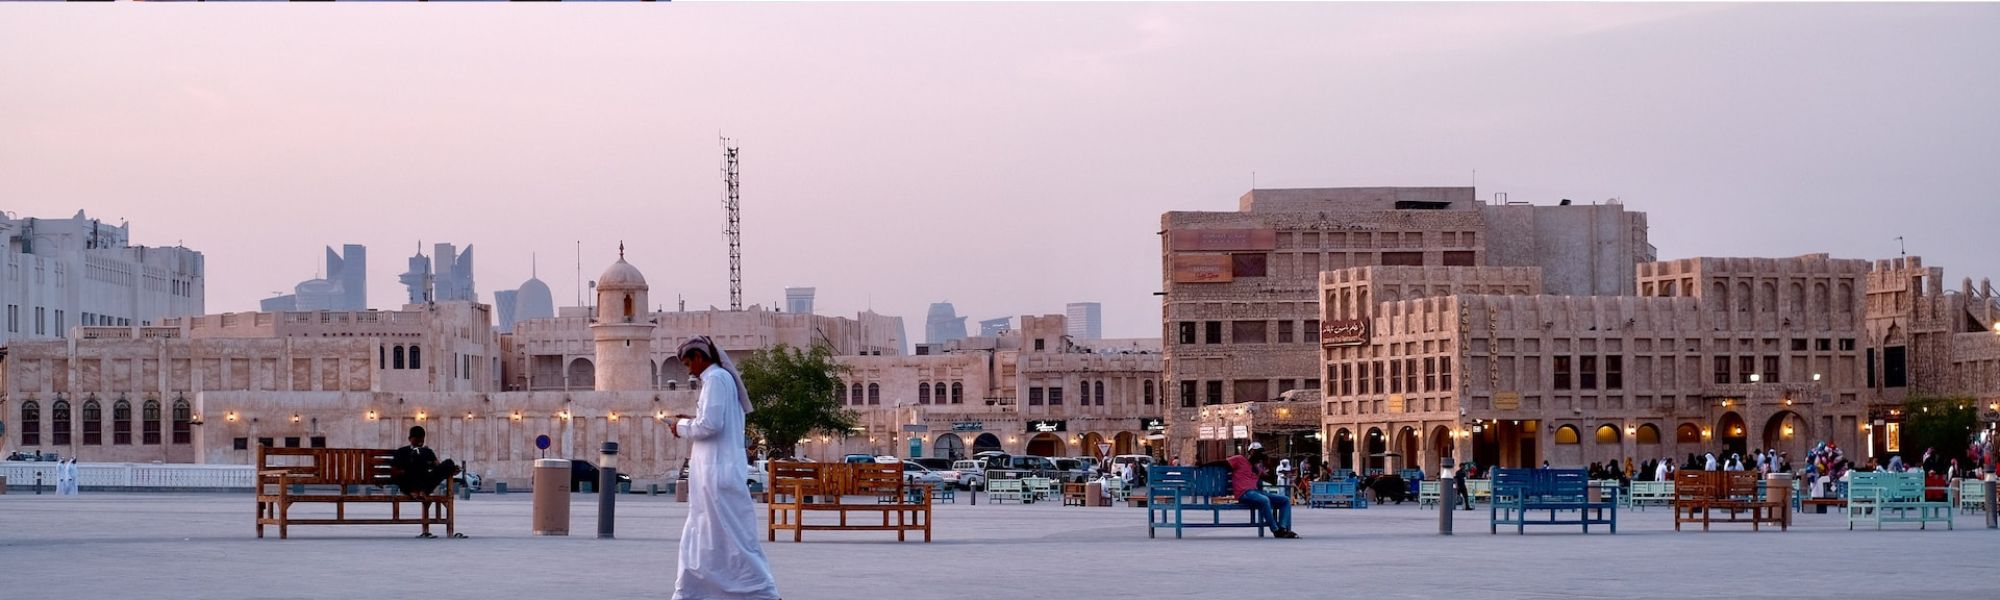 souq waqif Doha qatar